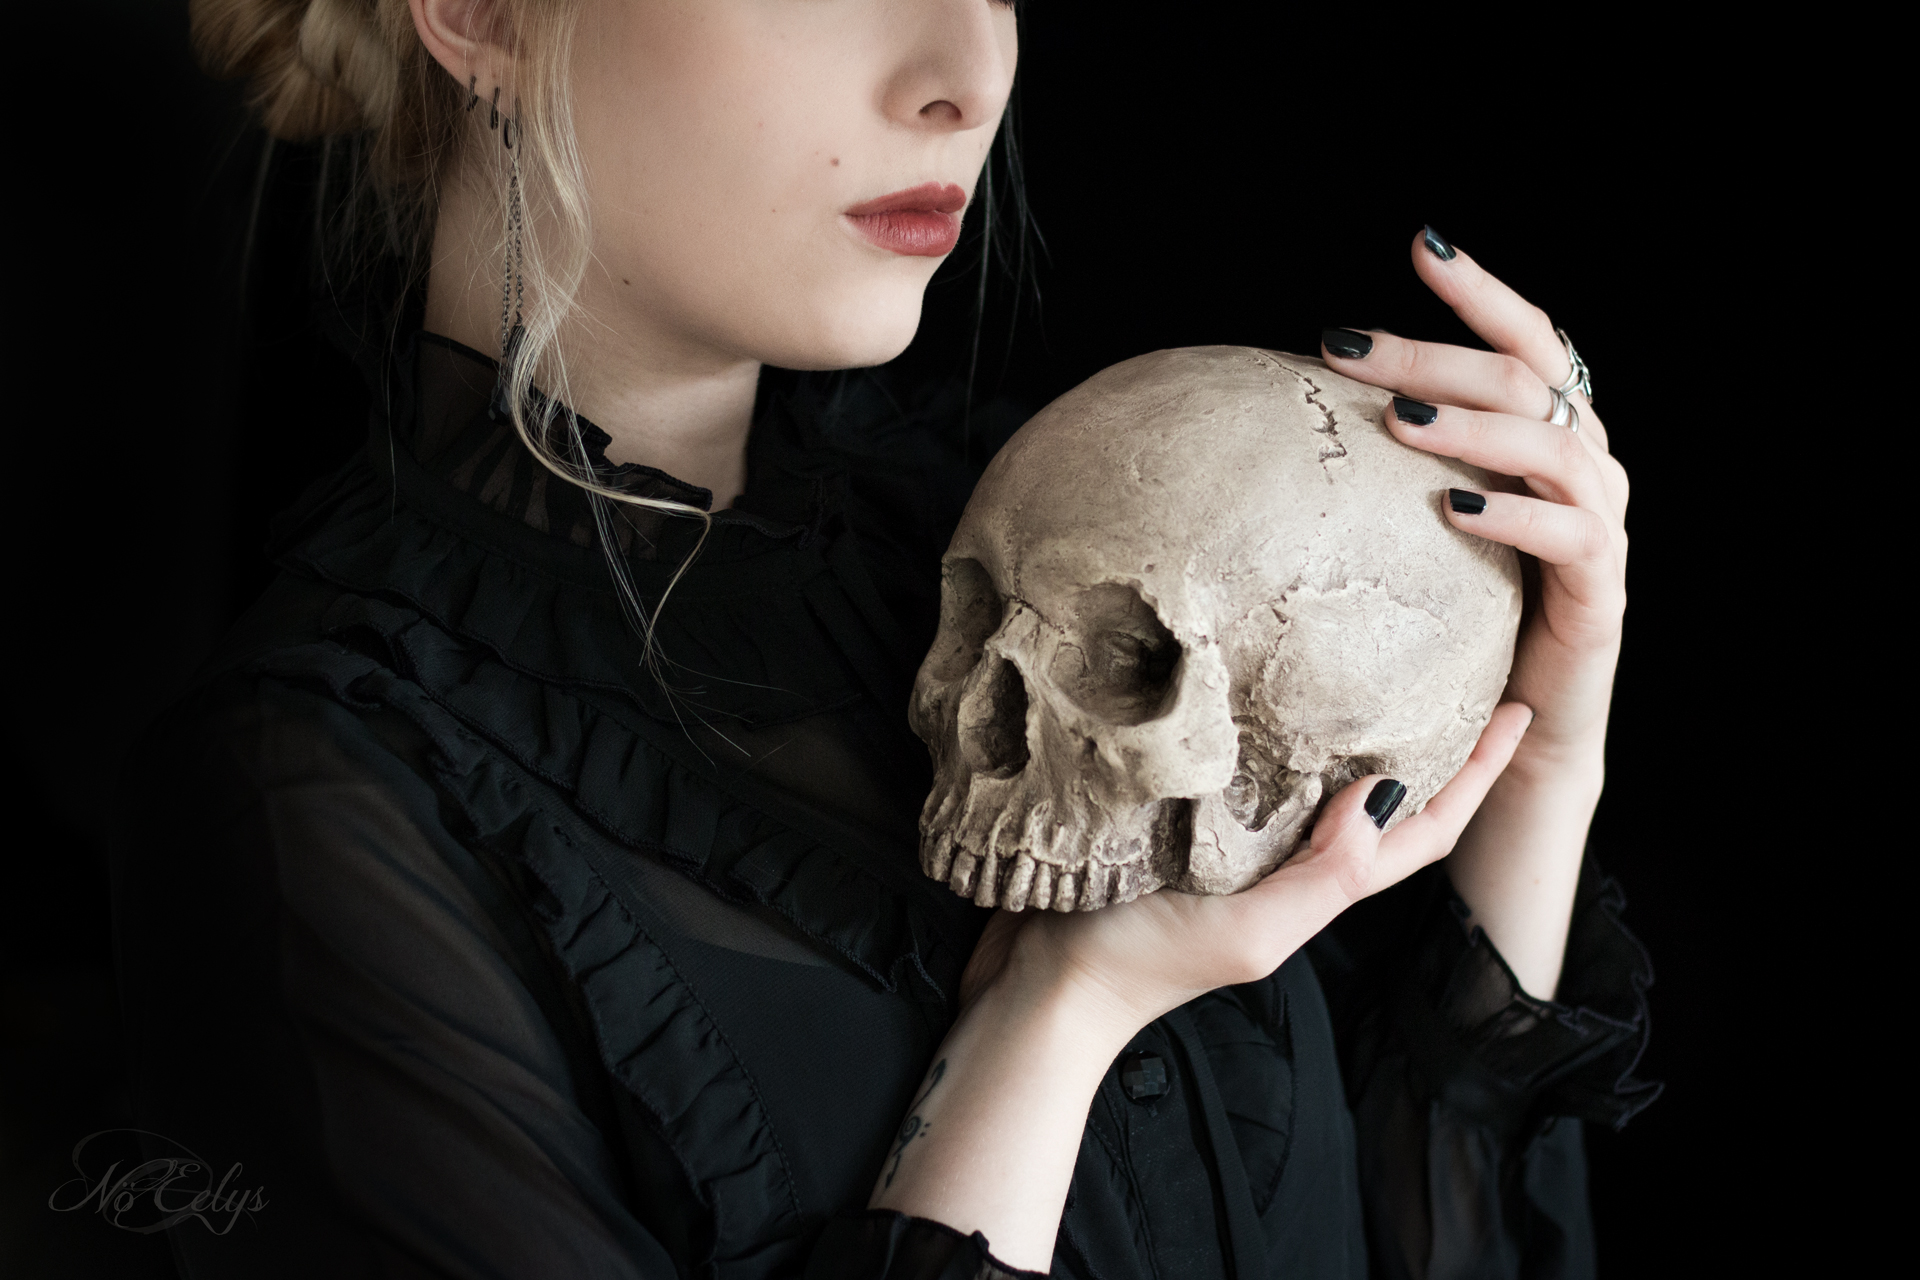 Portrait gothique romantique victorien avec réplique de crâne par No Eelys photographe, modèle et blogueuse alternative Paris Ile de France (Le Boudoir de Nö)